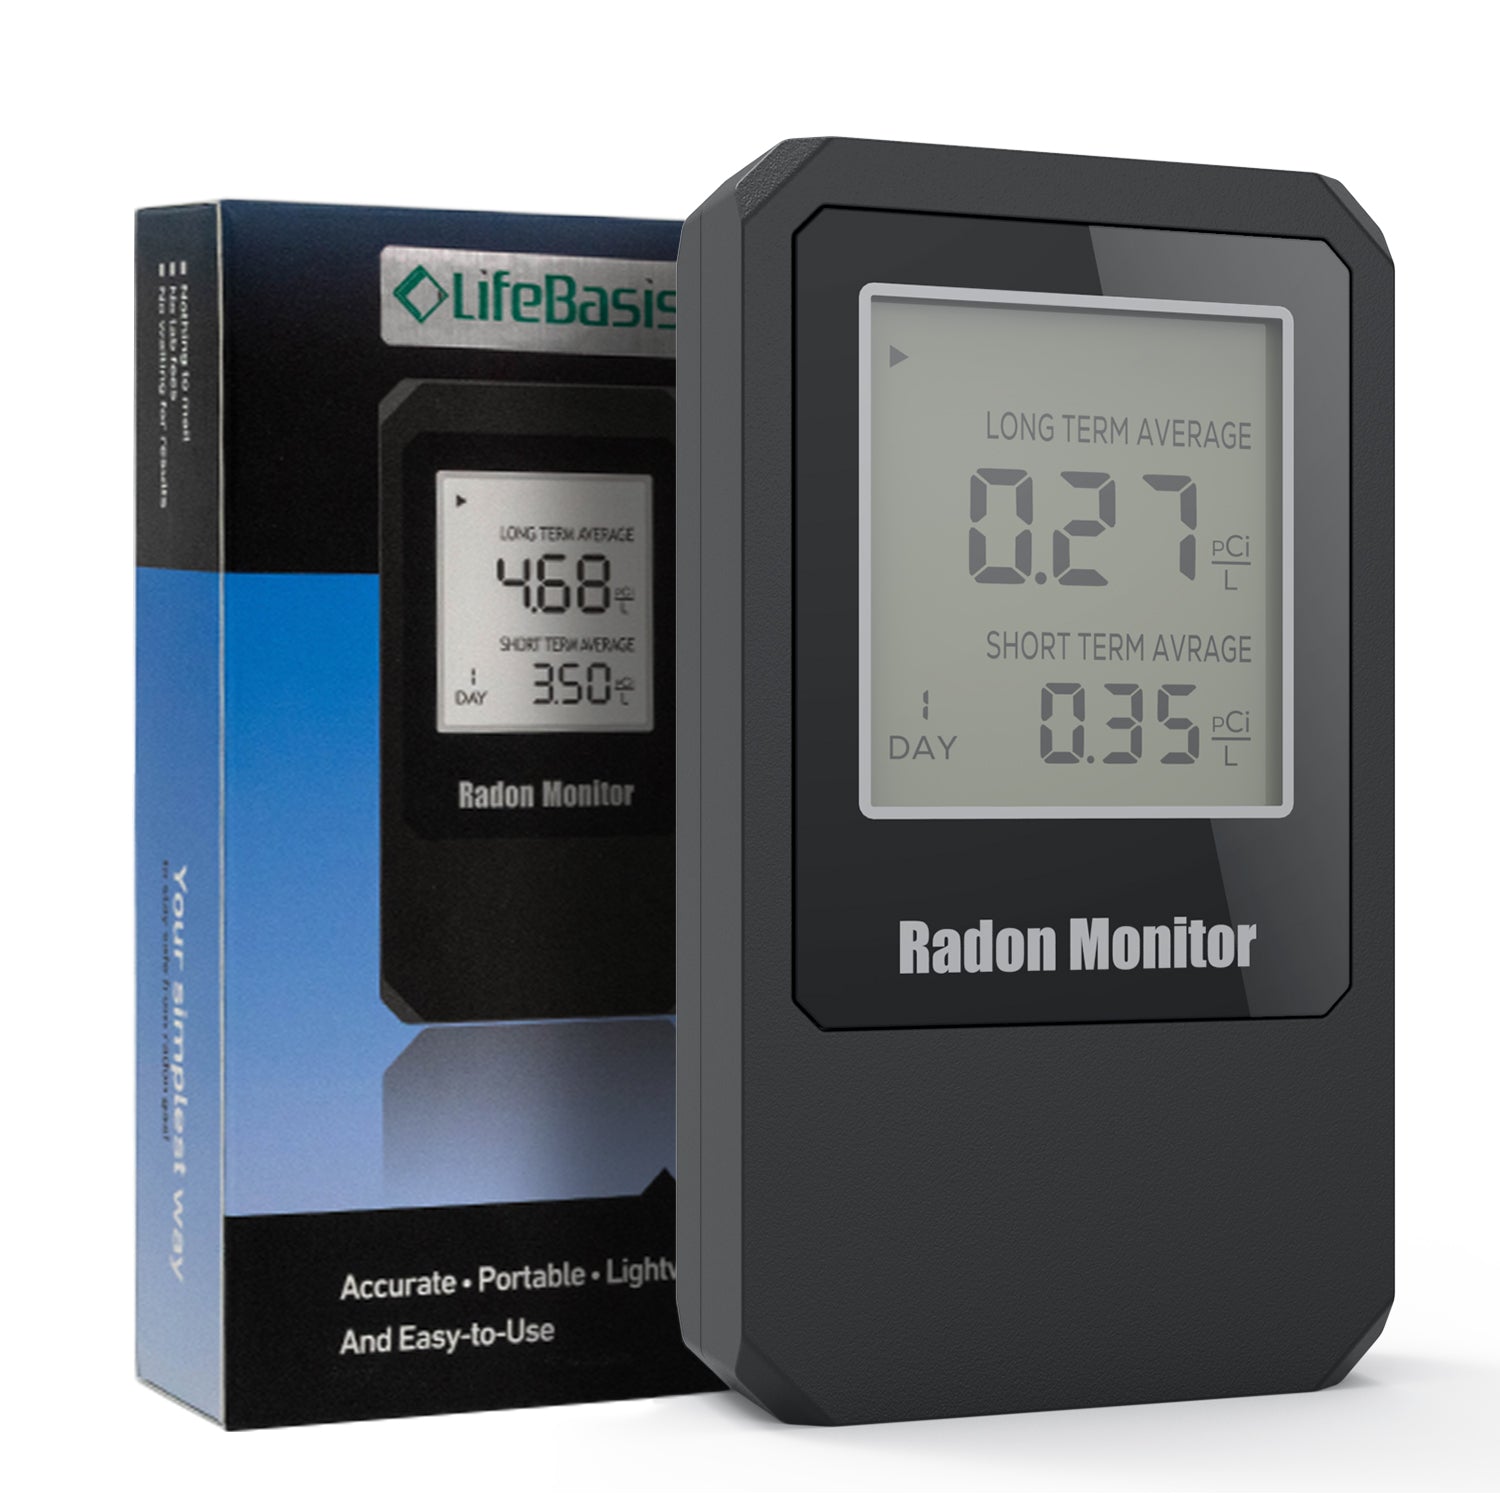 Un rendimiento estable mejor detector portátil de radón el radón Monitor  Medidor de prueba de fugas de gas - China El radón Monitor portátil  Detector de alarma de gas radón continua el